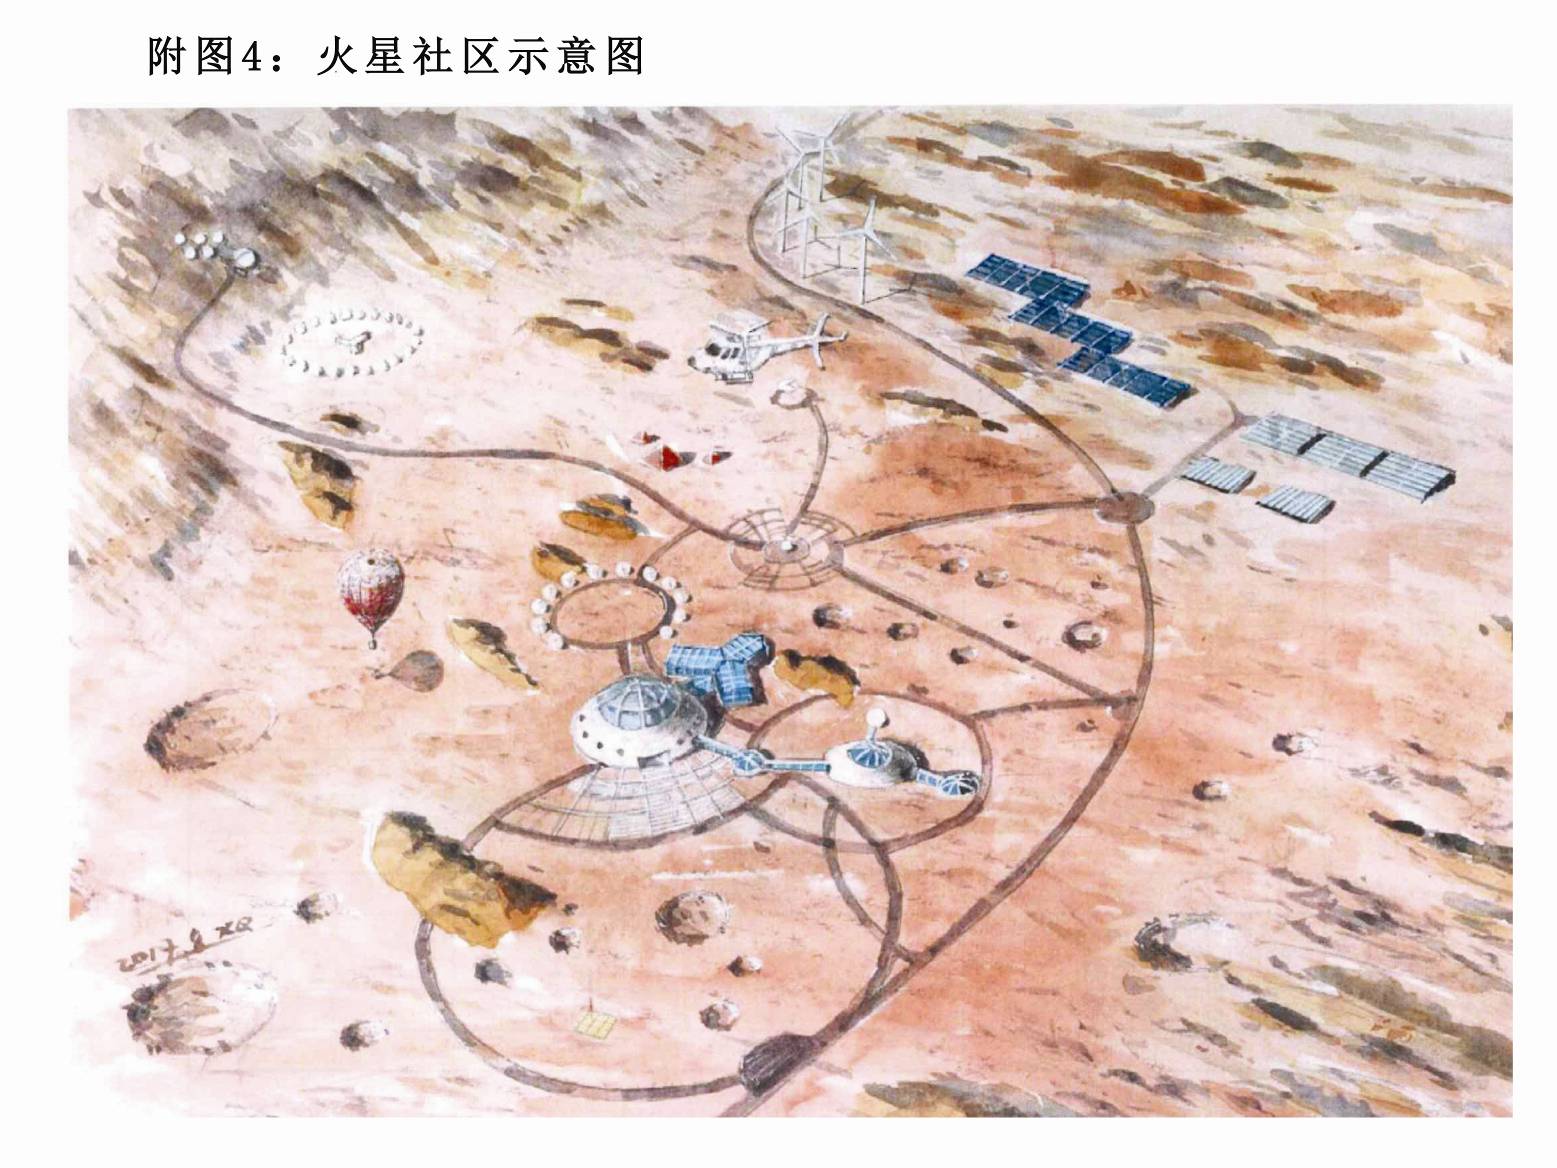 附件4：中国火星村（模拟火星基地）旅游开发项目.jpg